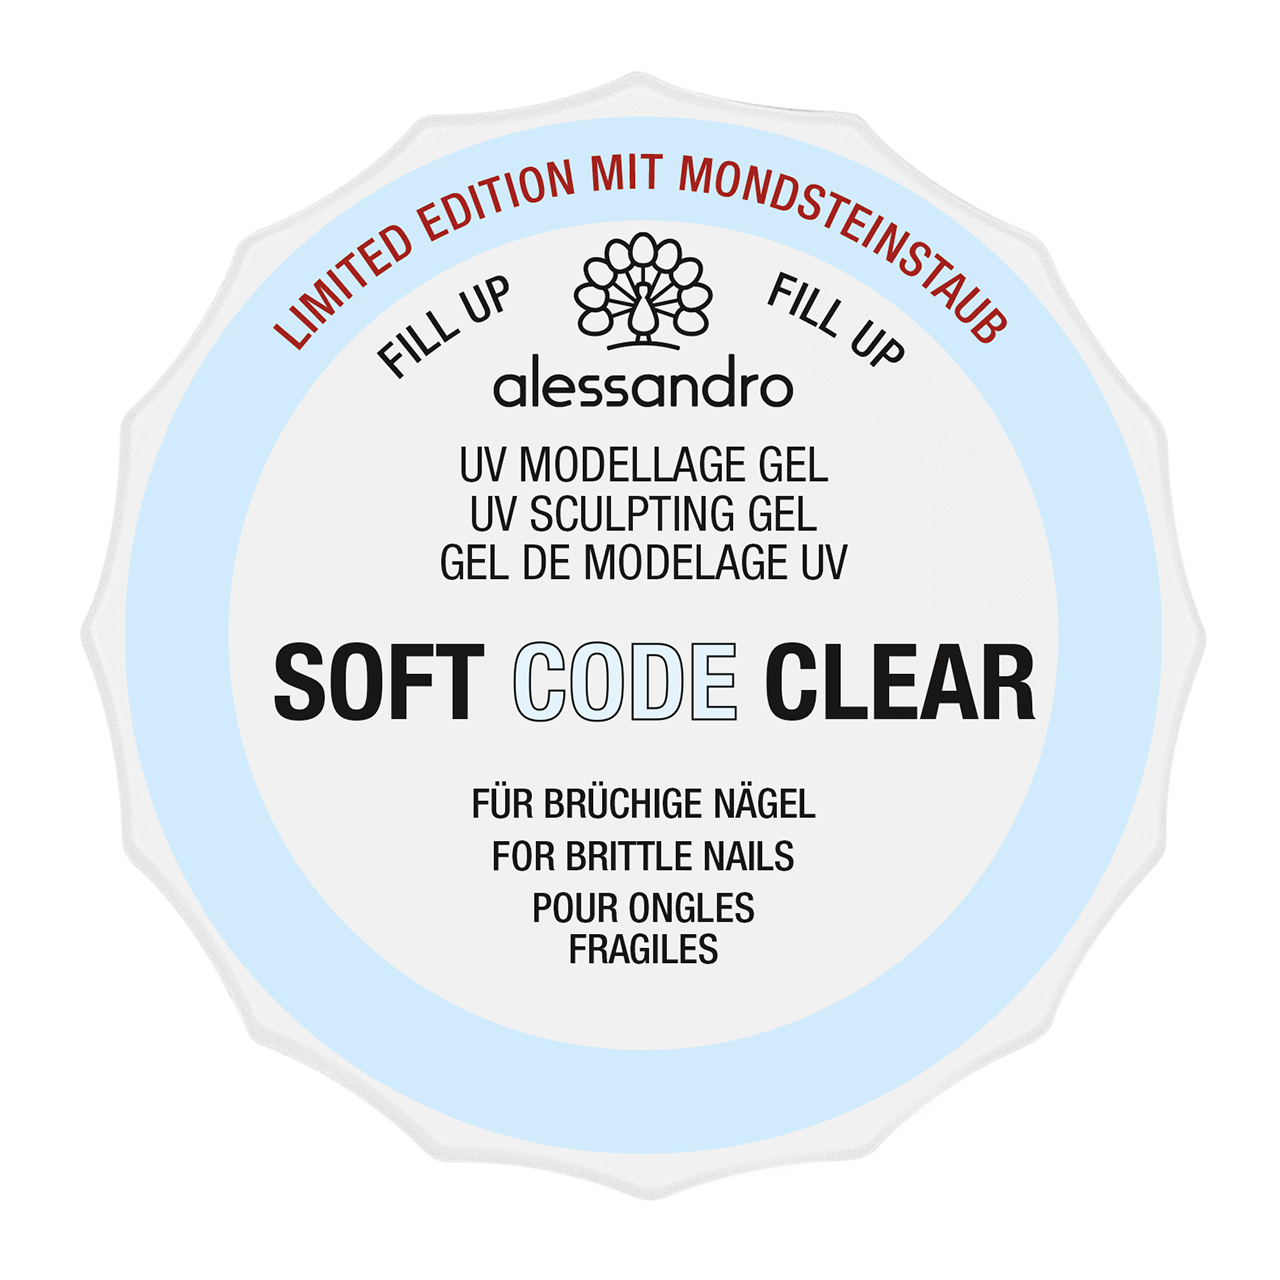 Soft Code Clear mit Mondsteinstaub 50 g